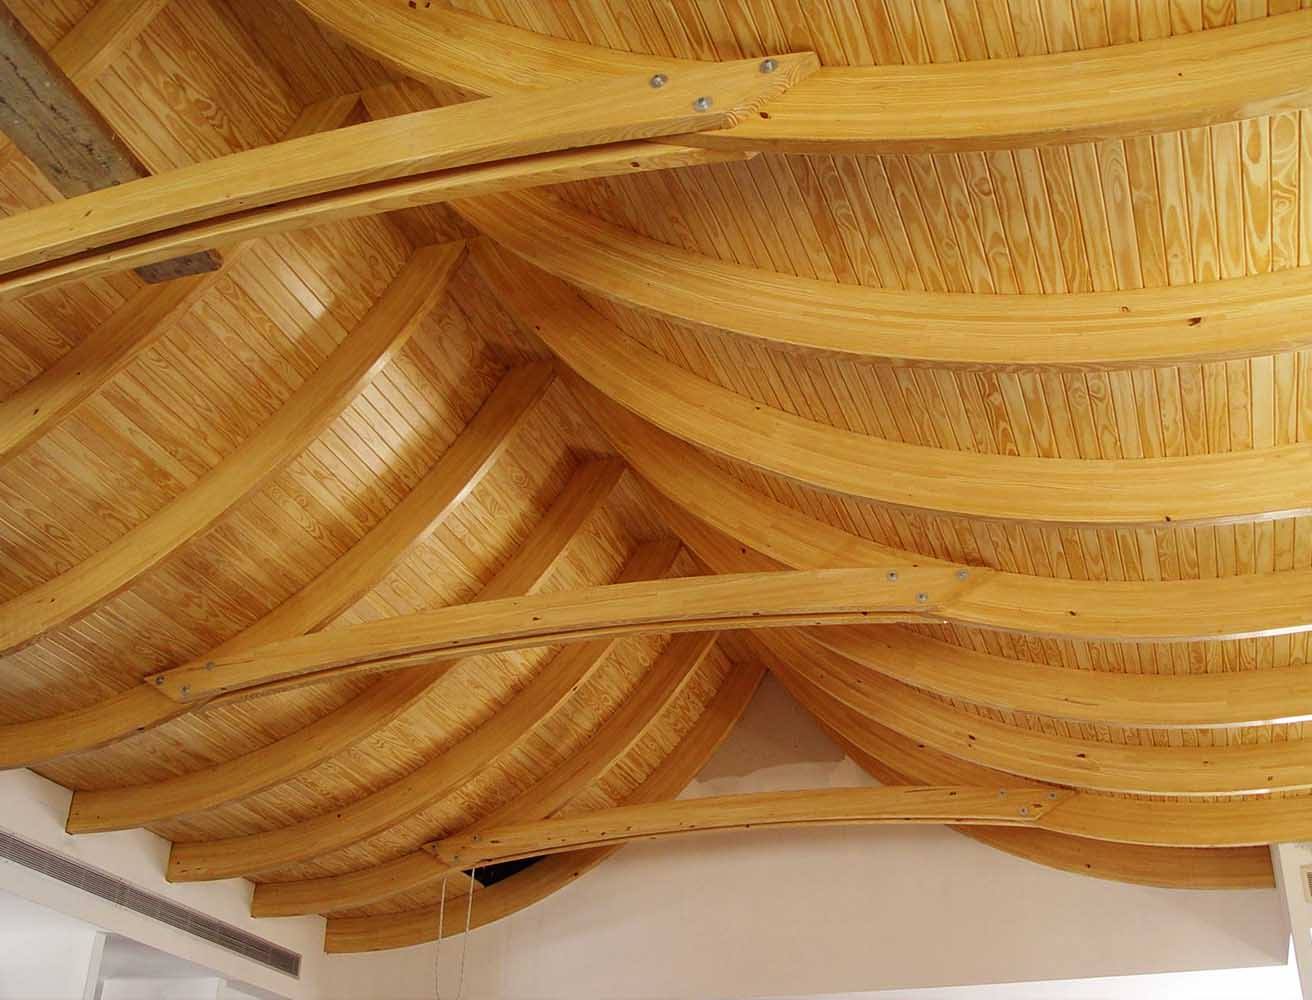 Poplar wood ceiling